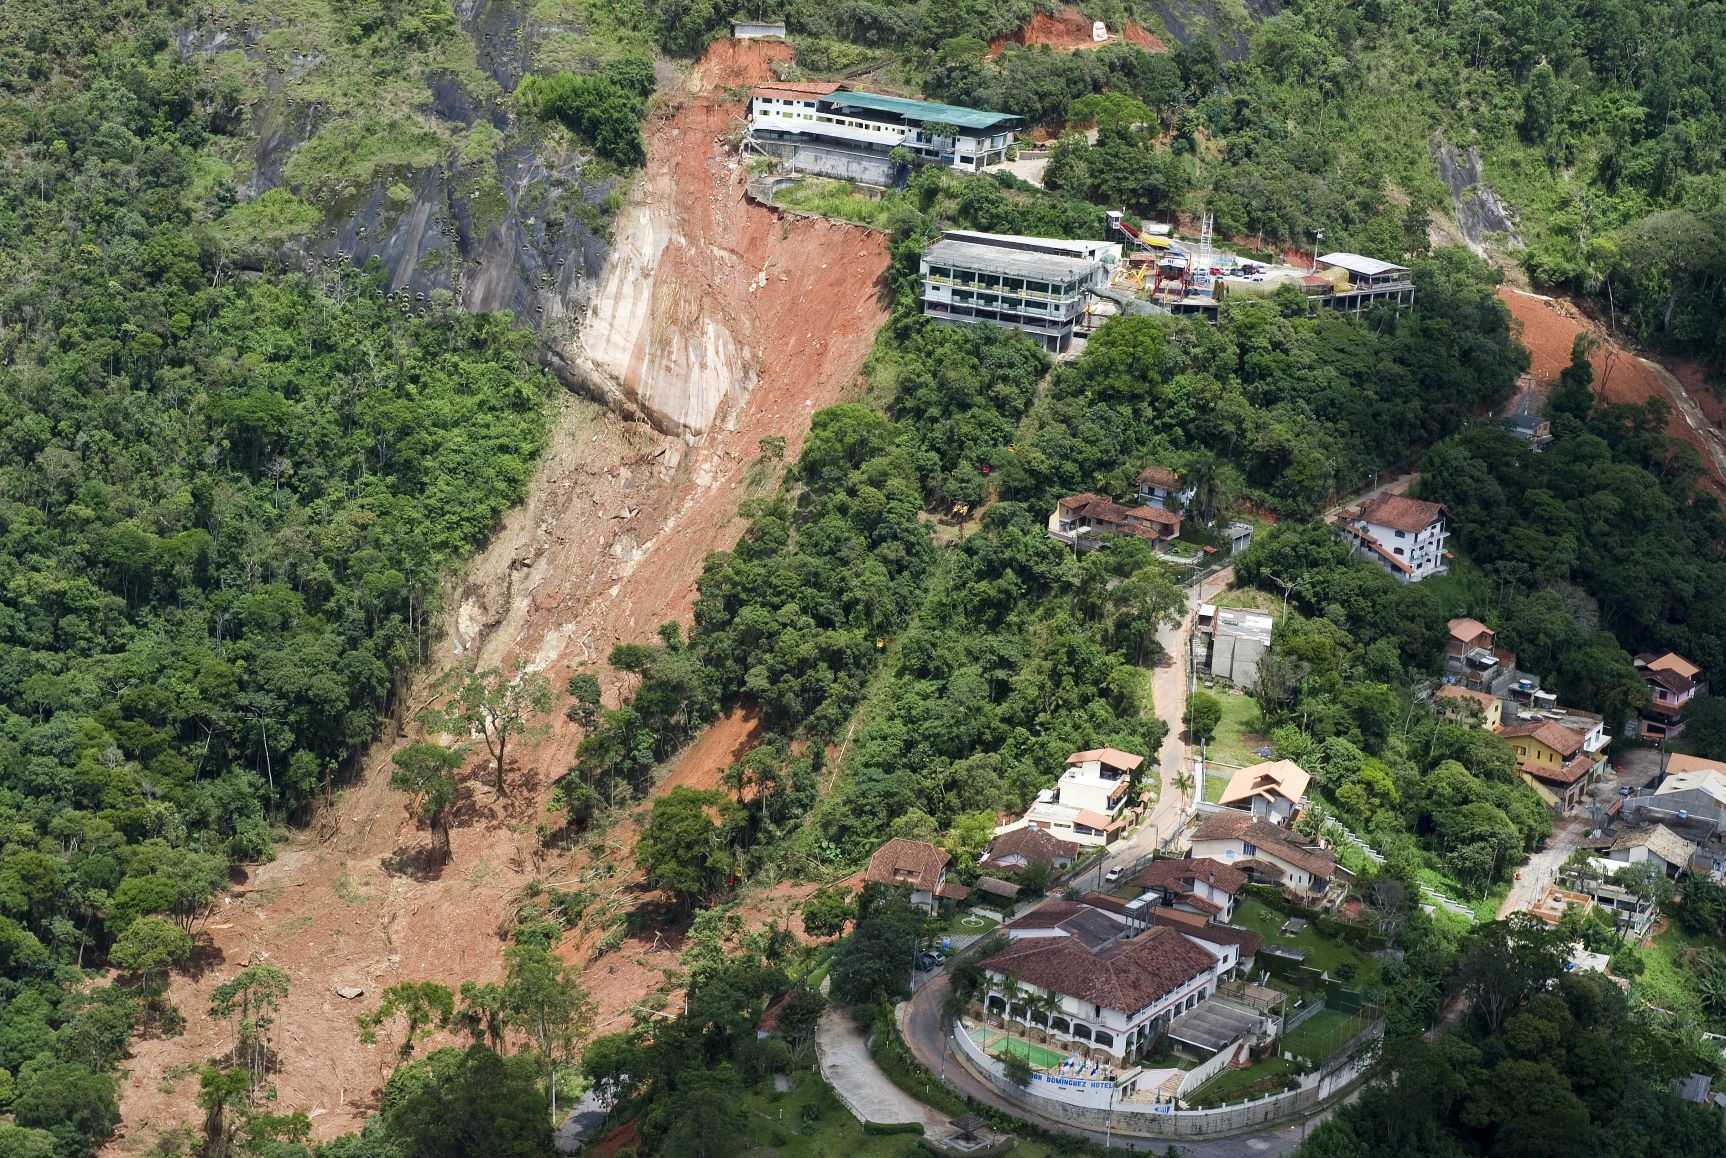 Deslizamento de terra gigantesco perto do centro de Nova Friburgo: geógrafa alerta que chuvas na região estão cada vez mais concentradas e mais intensas (Foto: Antonio Scorza/AFP - 18/01/2011)